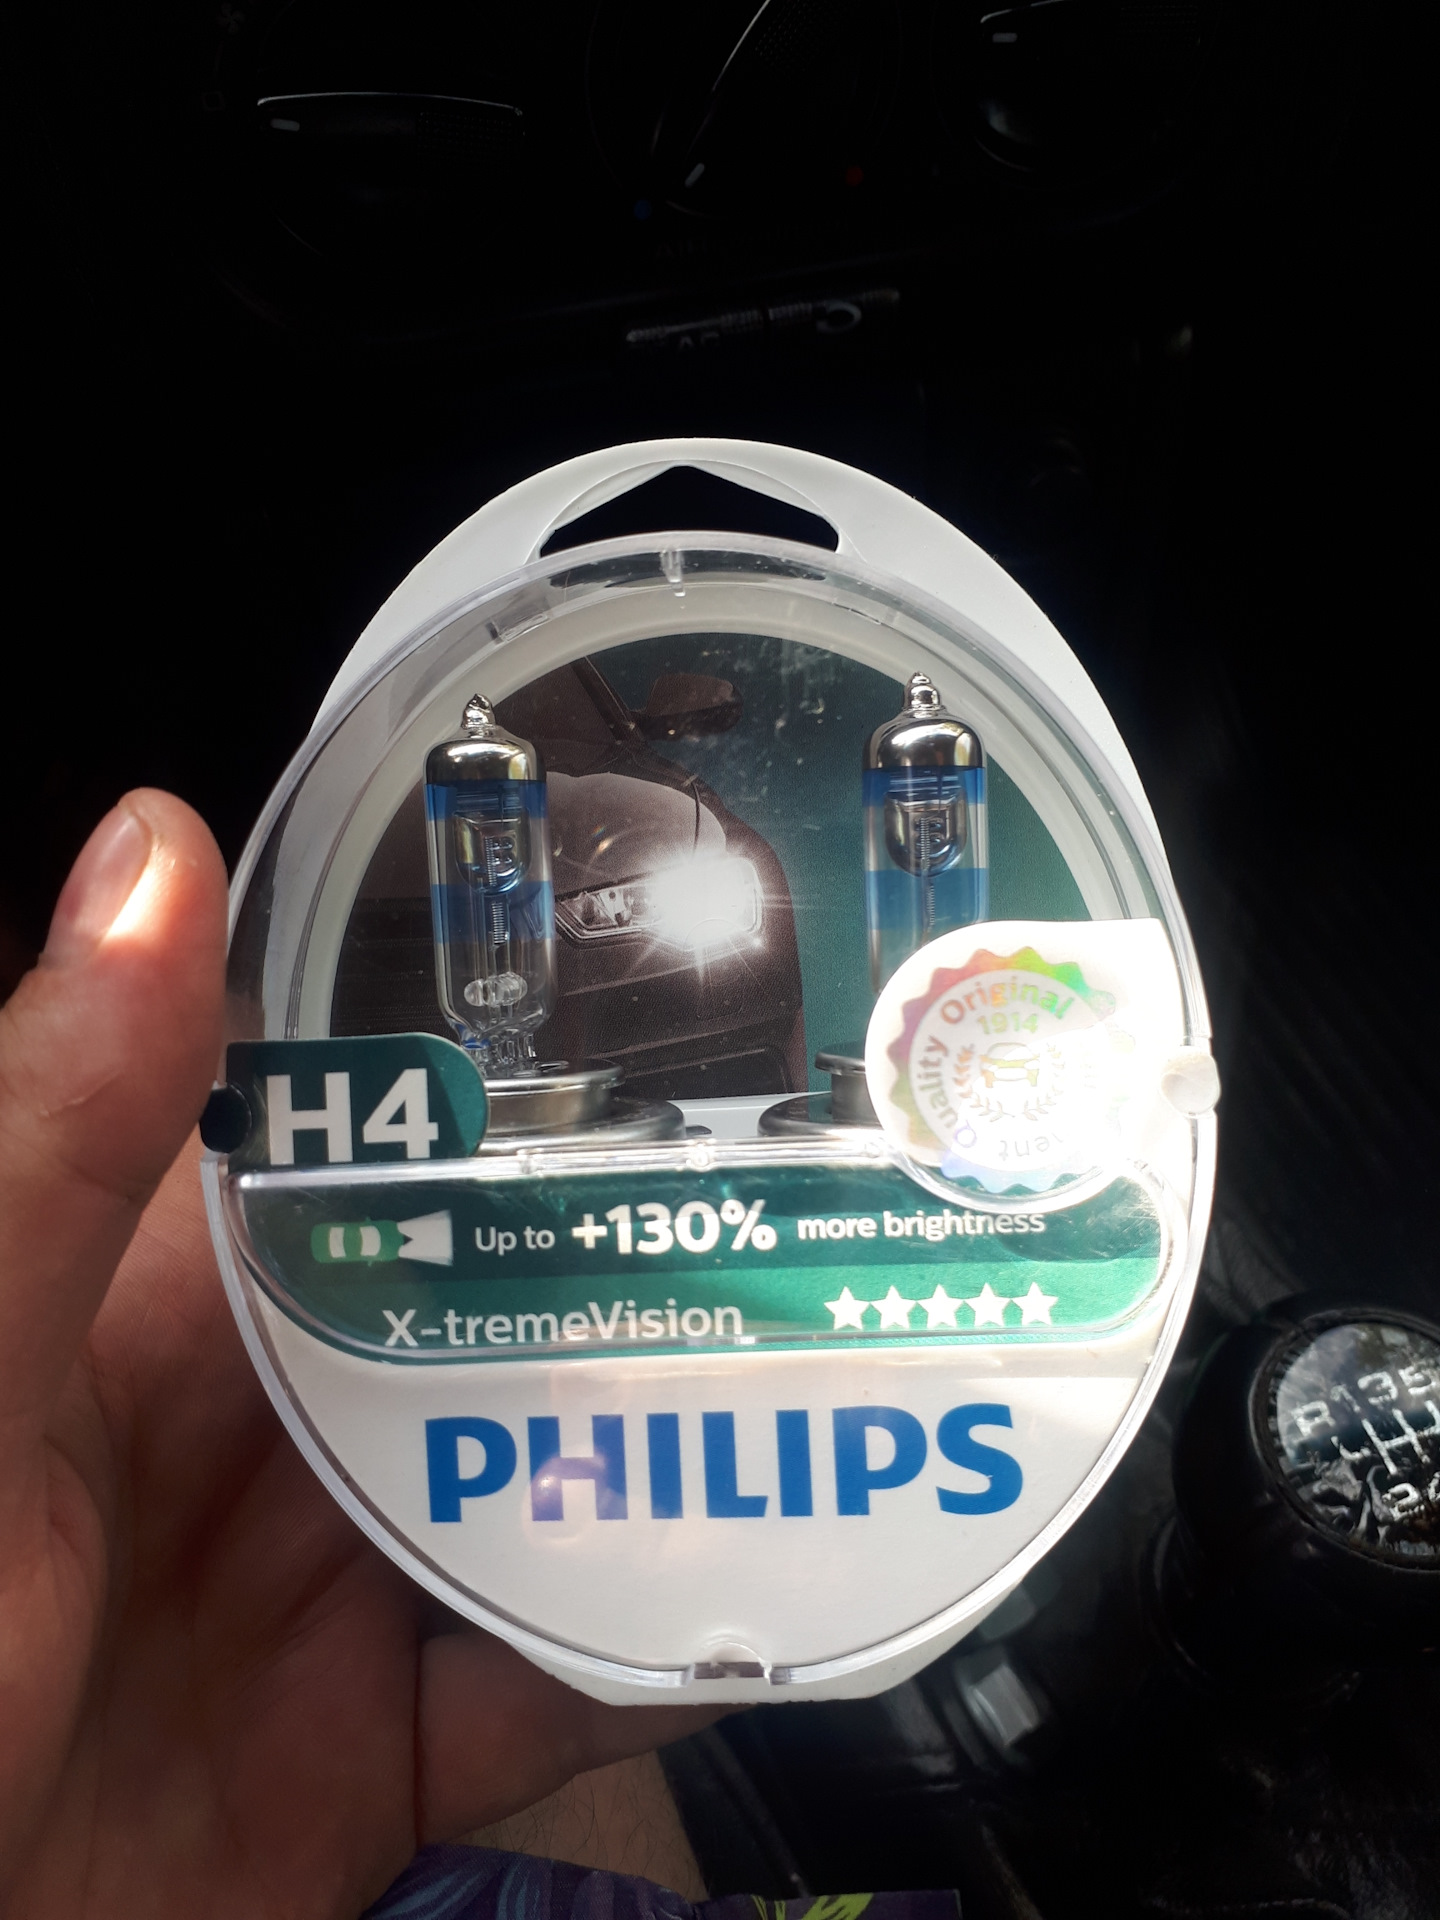 Филипс 130. Лампы Филипс h4 +130. Philips x-treme Vision +130%. Philips x-treme Vision h4 артикул. X-treme Vision +130 h4 3400k.